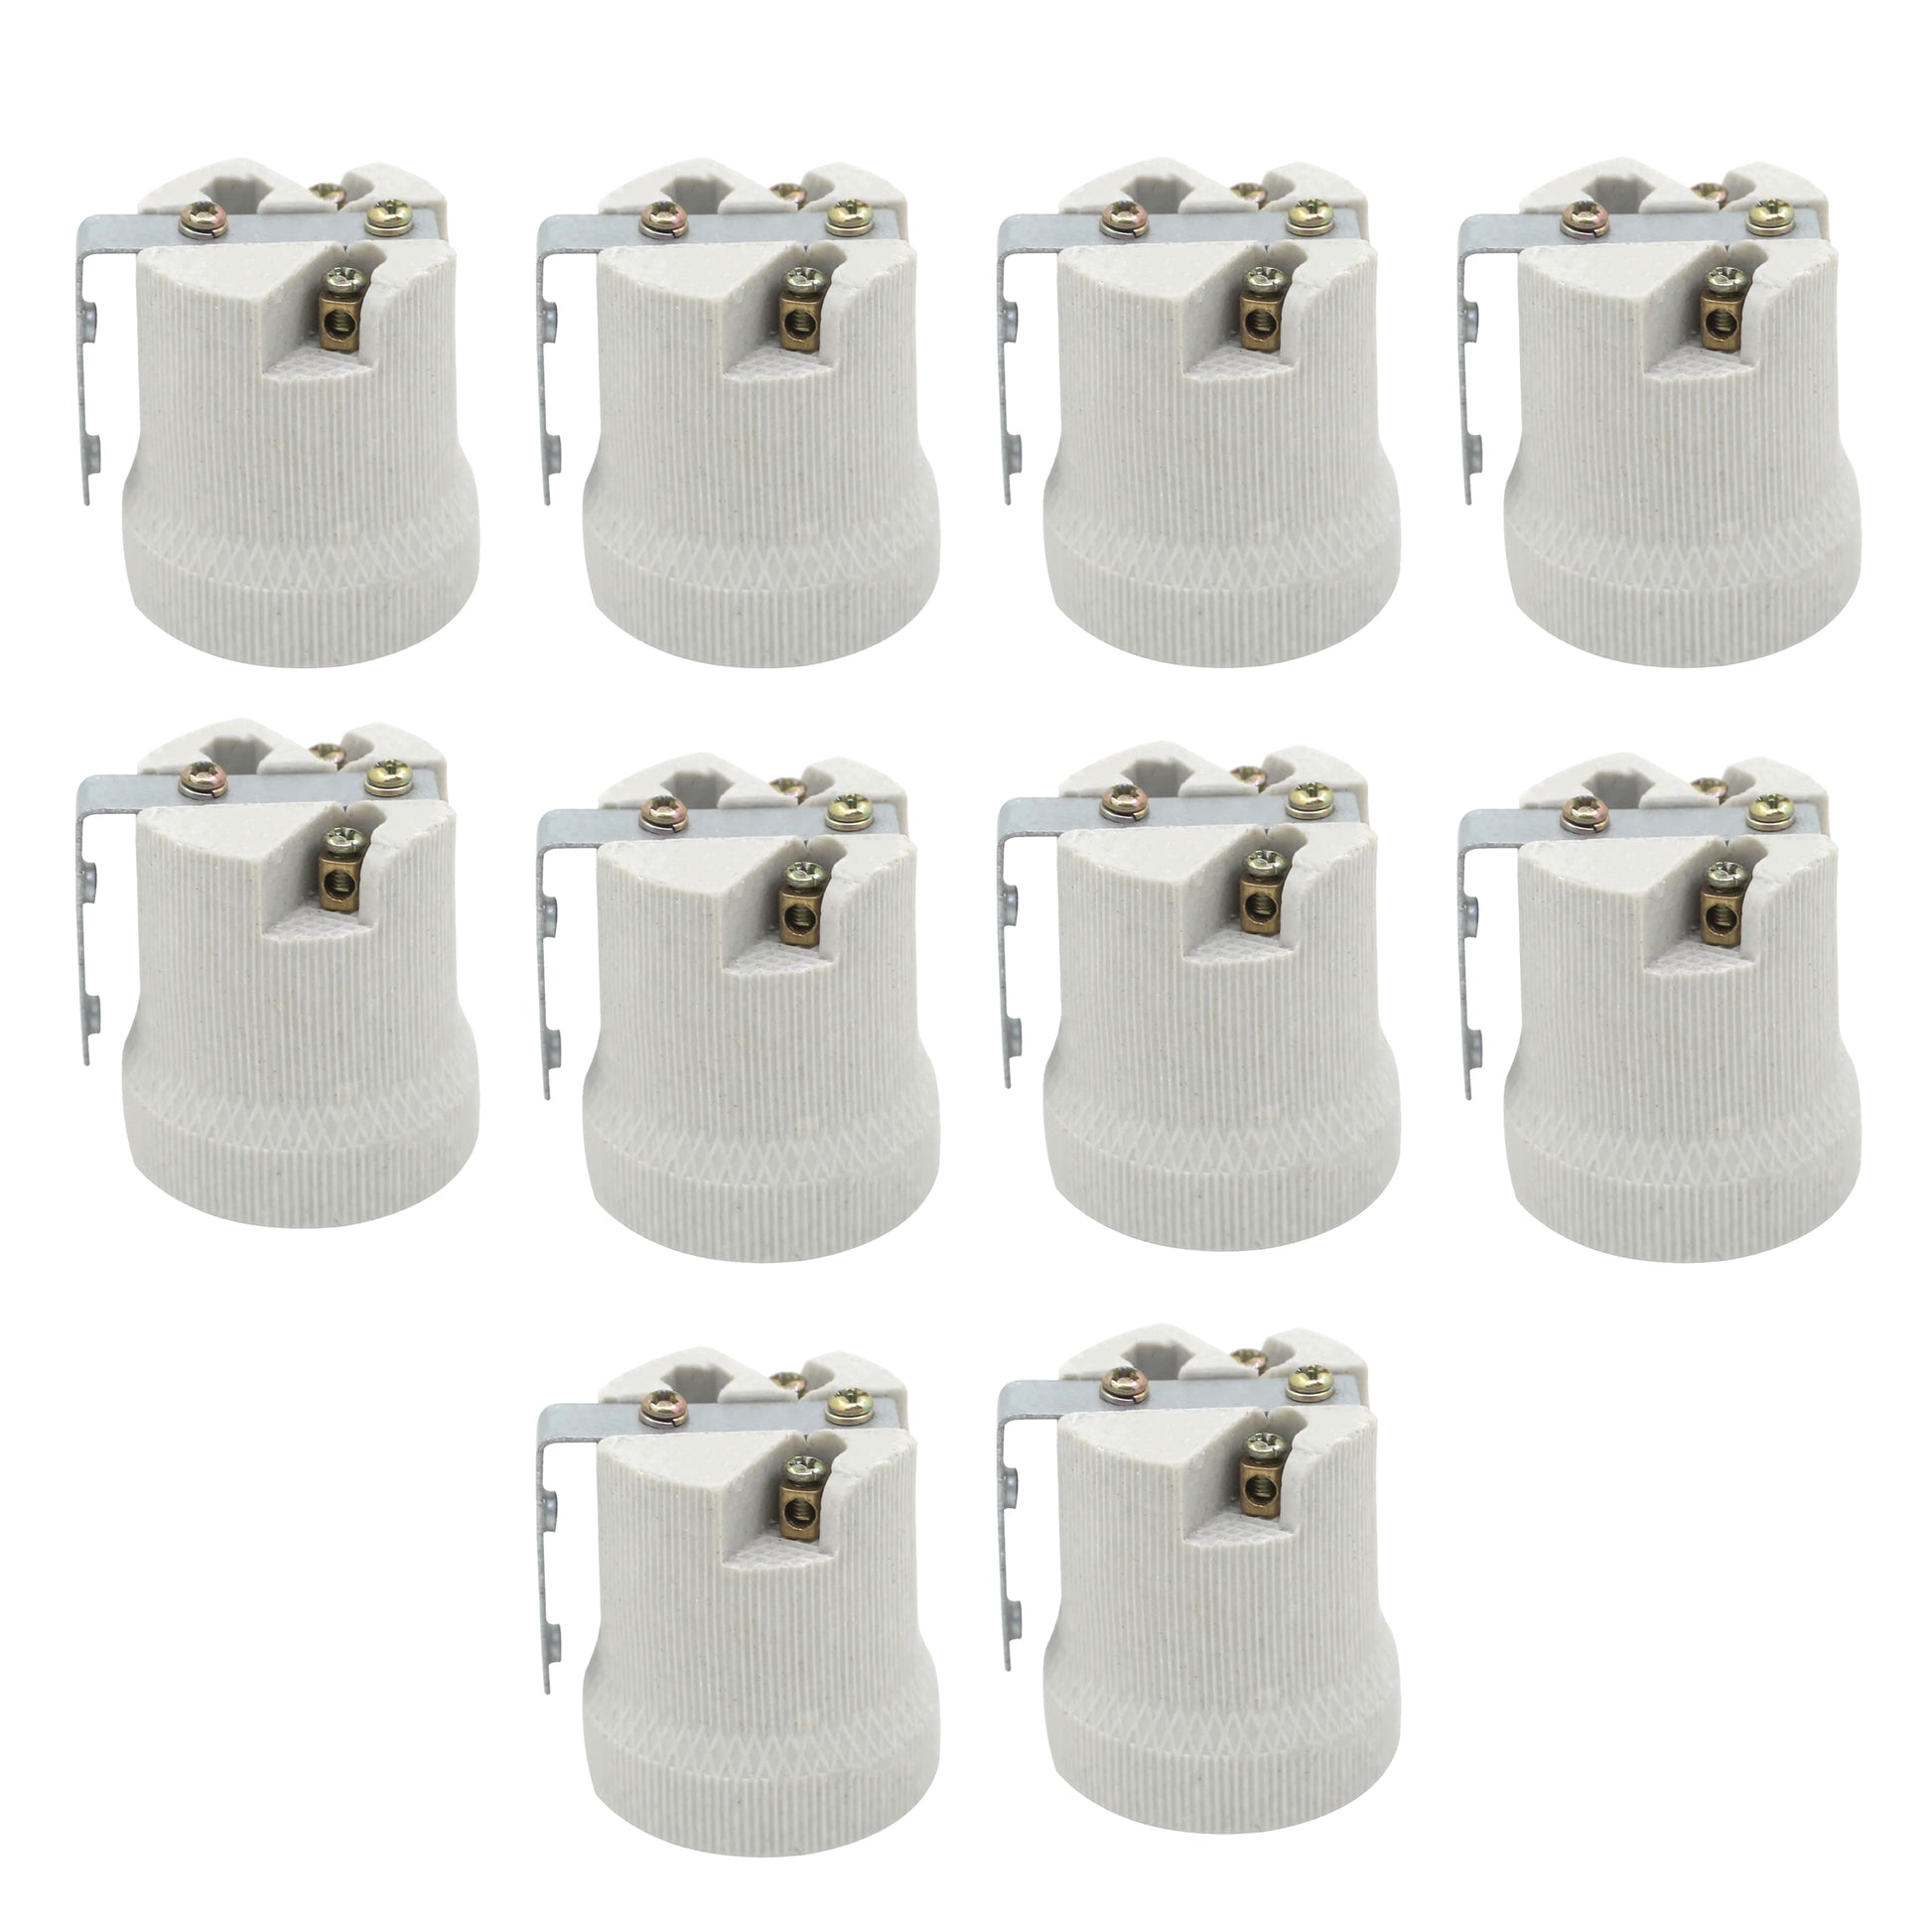 Ceramic Heat bulb holder in 10 packs